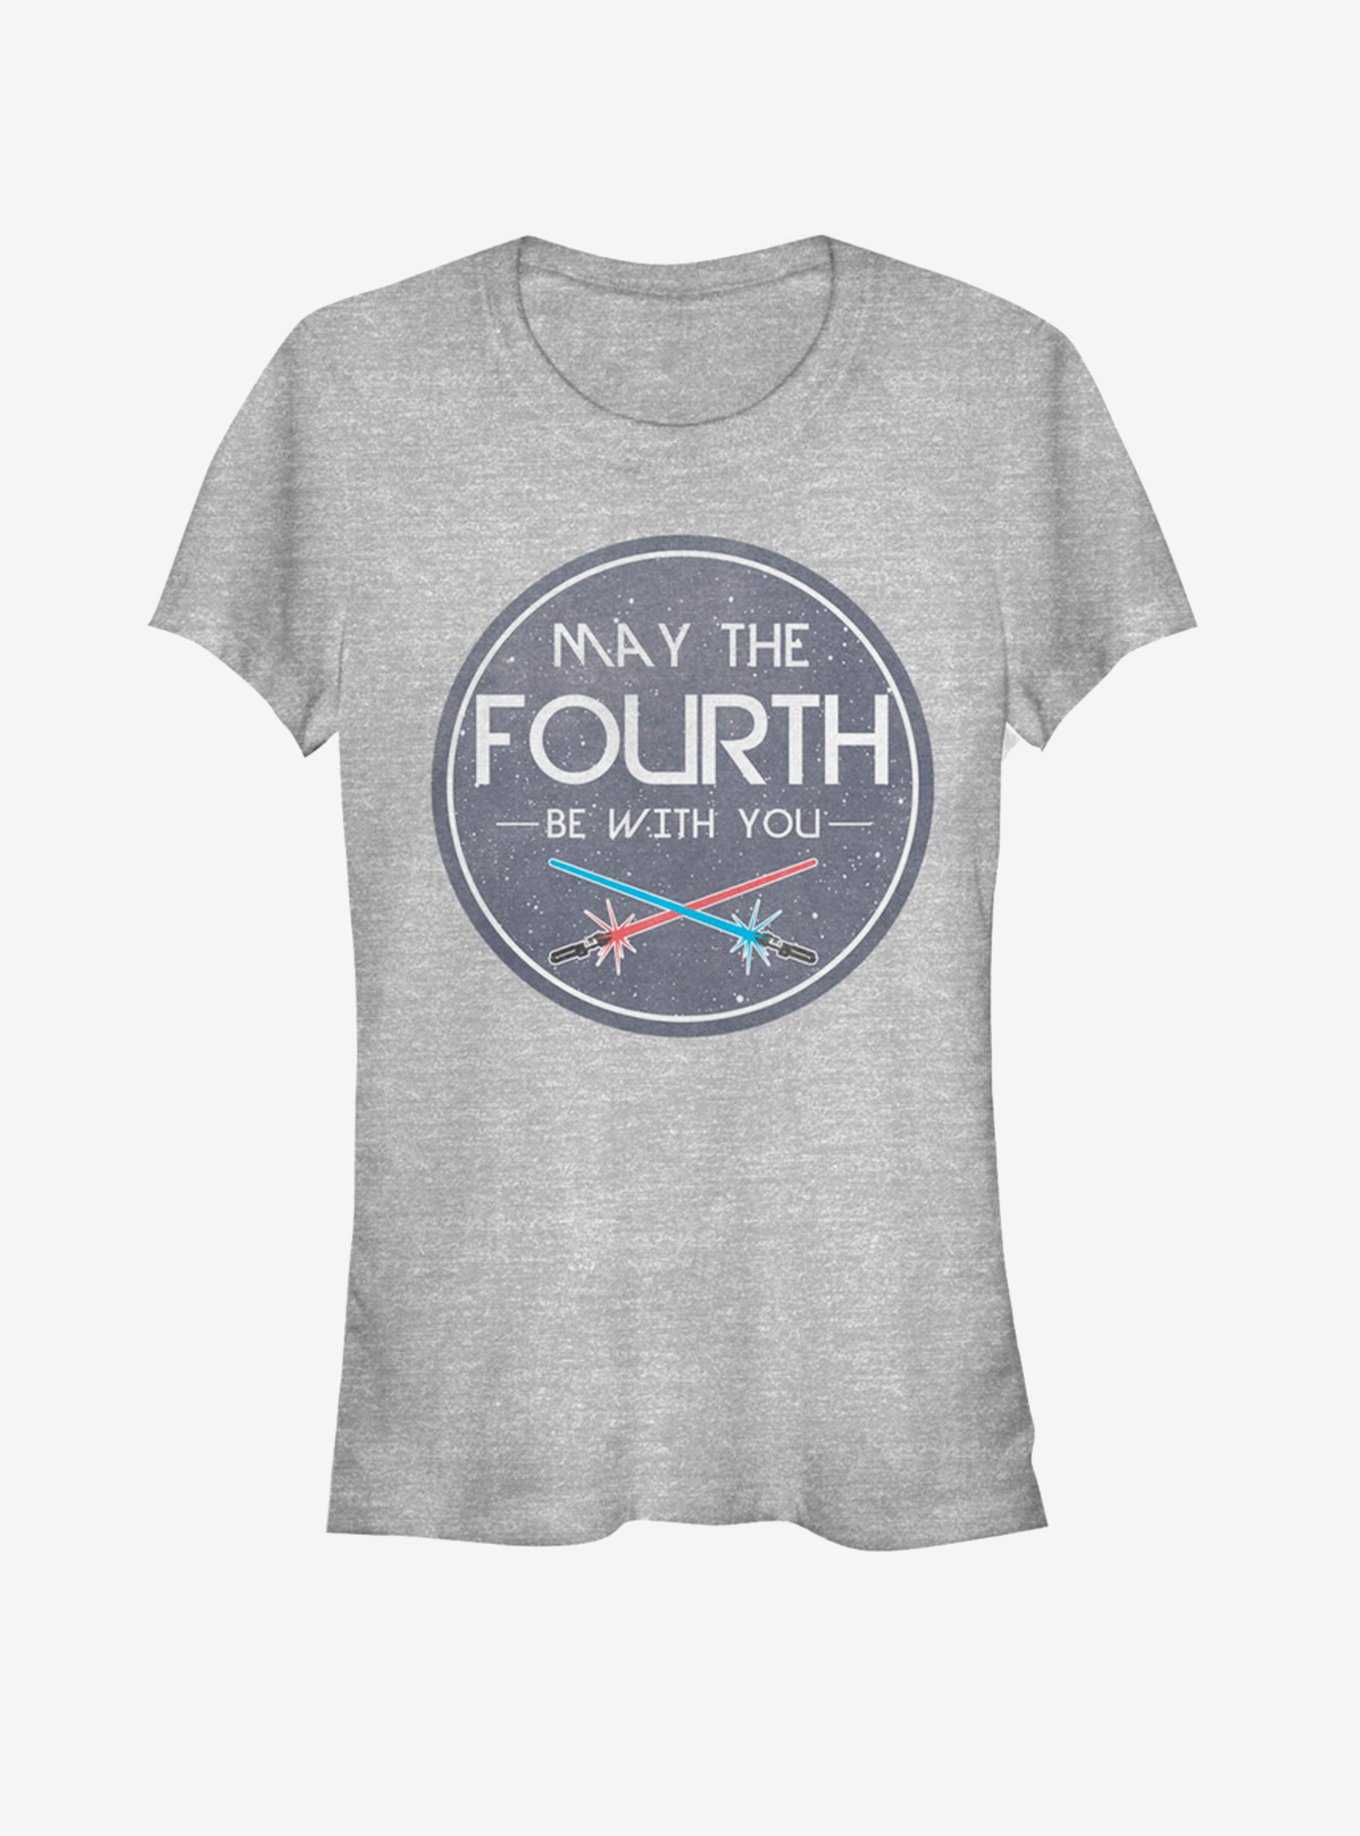 Star Wars May The Fourth Circle Girls T-Shirt, , hi-res